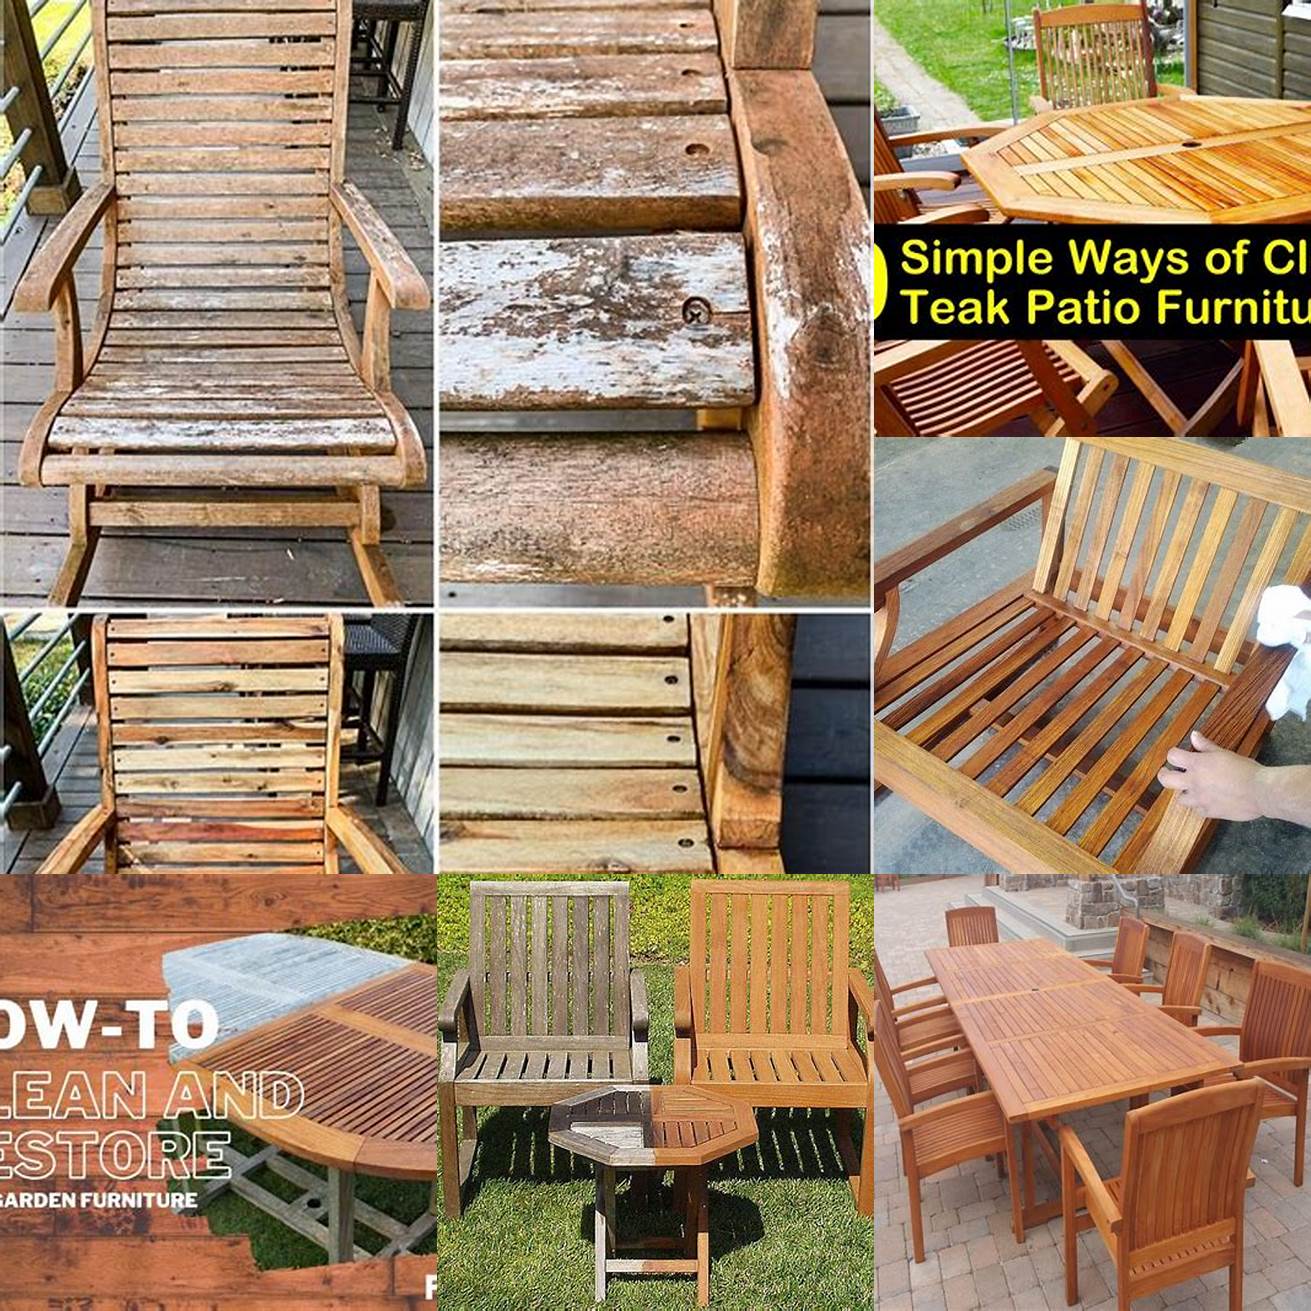 Steps for Caring for Teak Wood Furniture